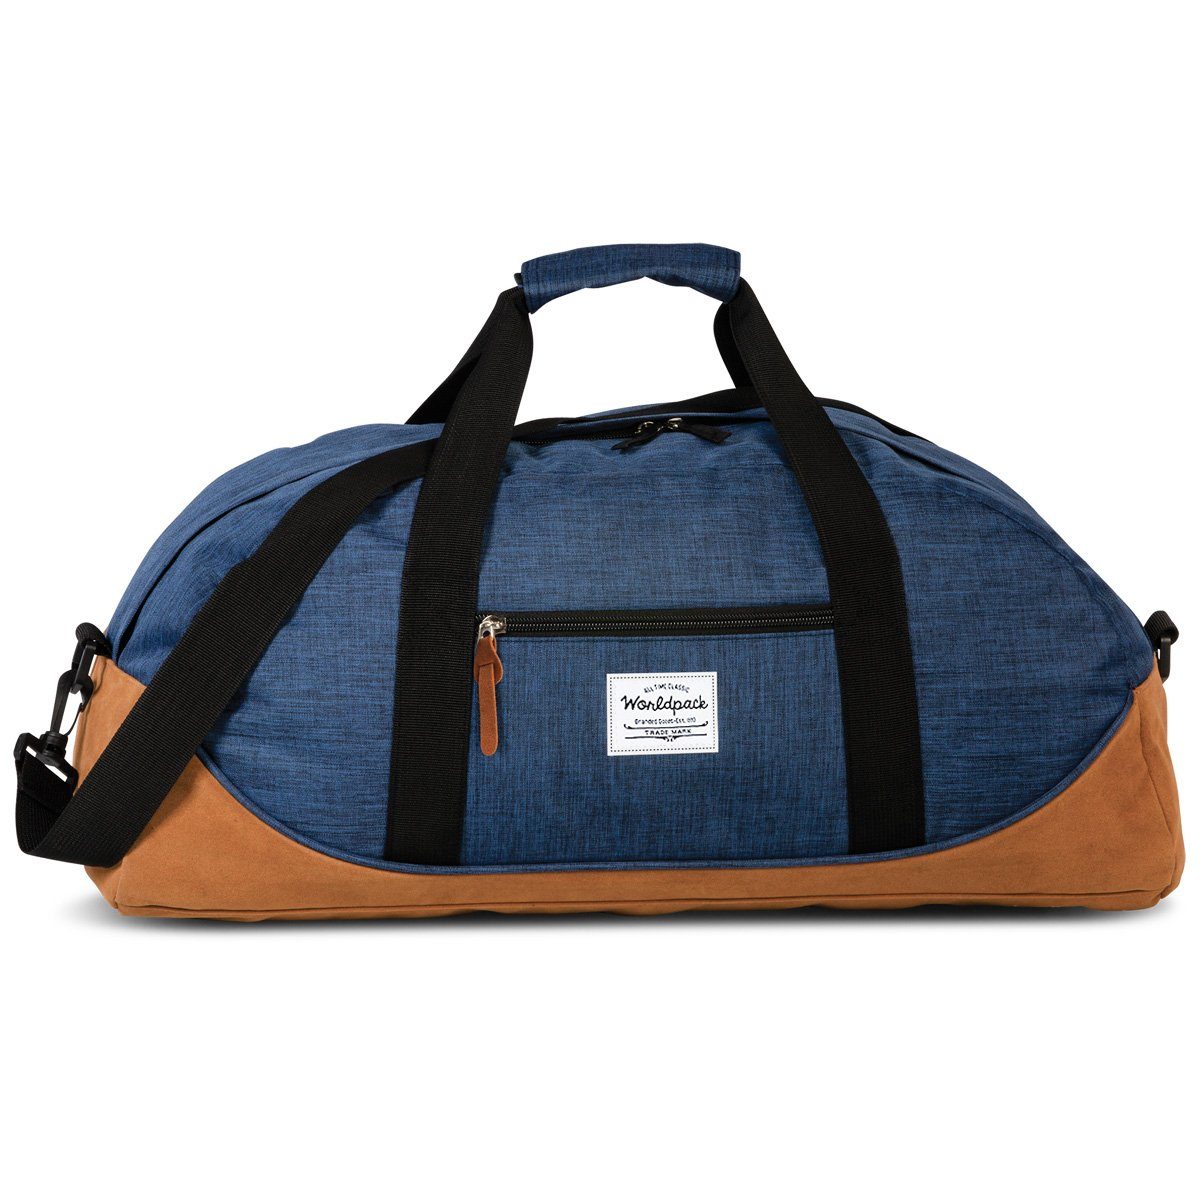 30327-9900 Sporttasche Budget fabrizio® Blau Weekender Reisetasche Worldpack Reisetasche